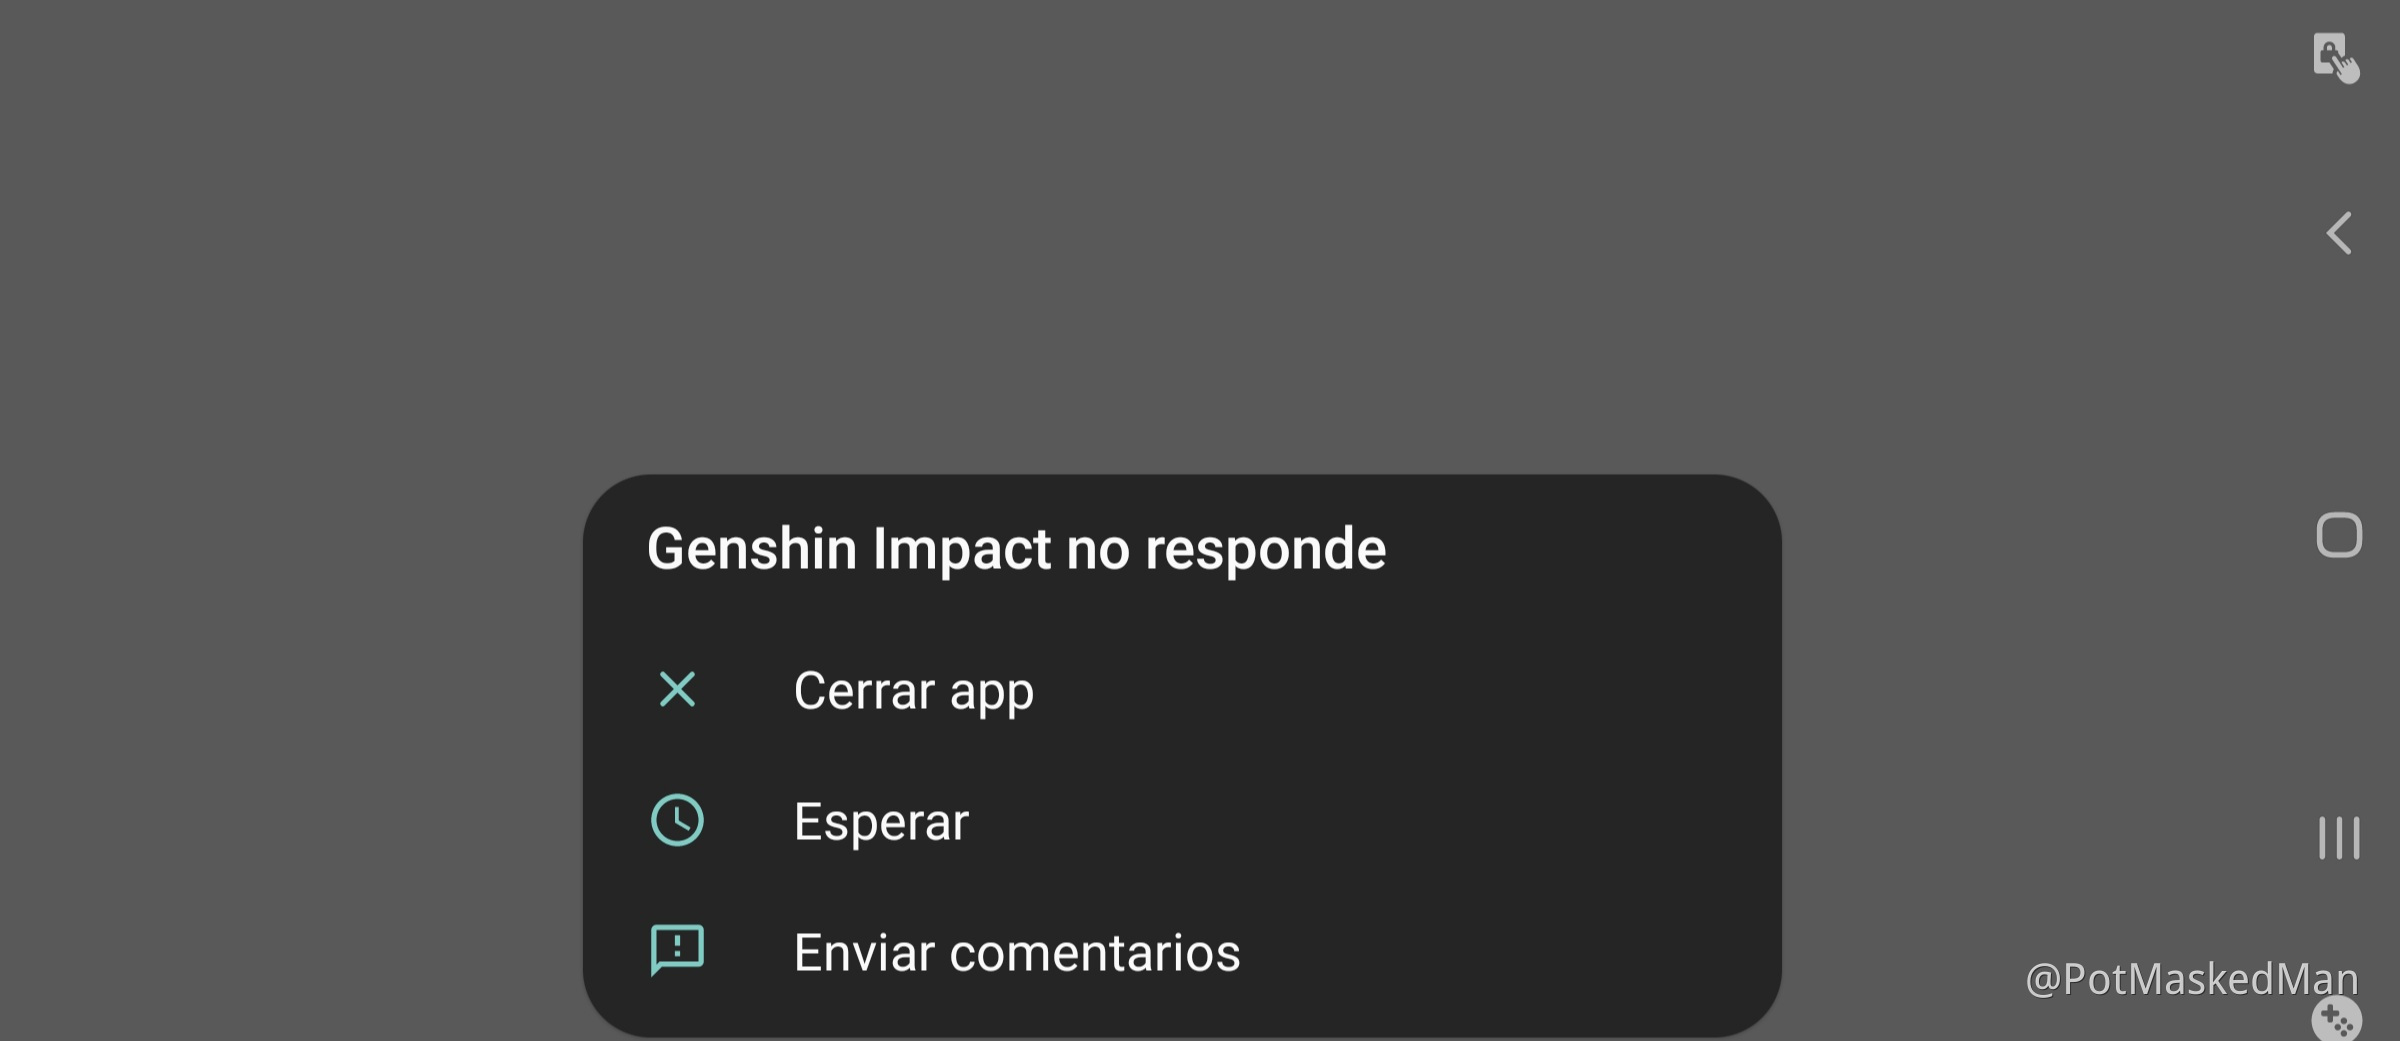 genshin impact download stuck at 0